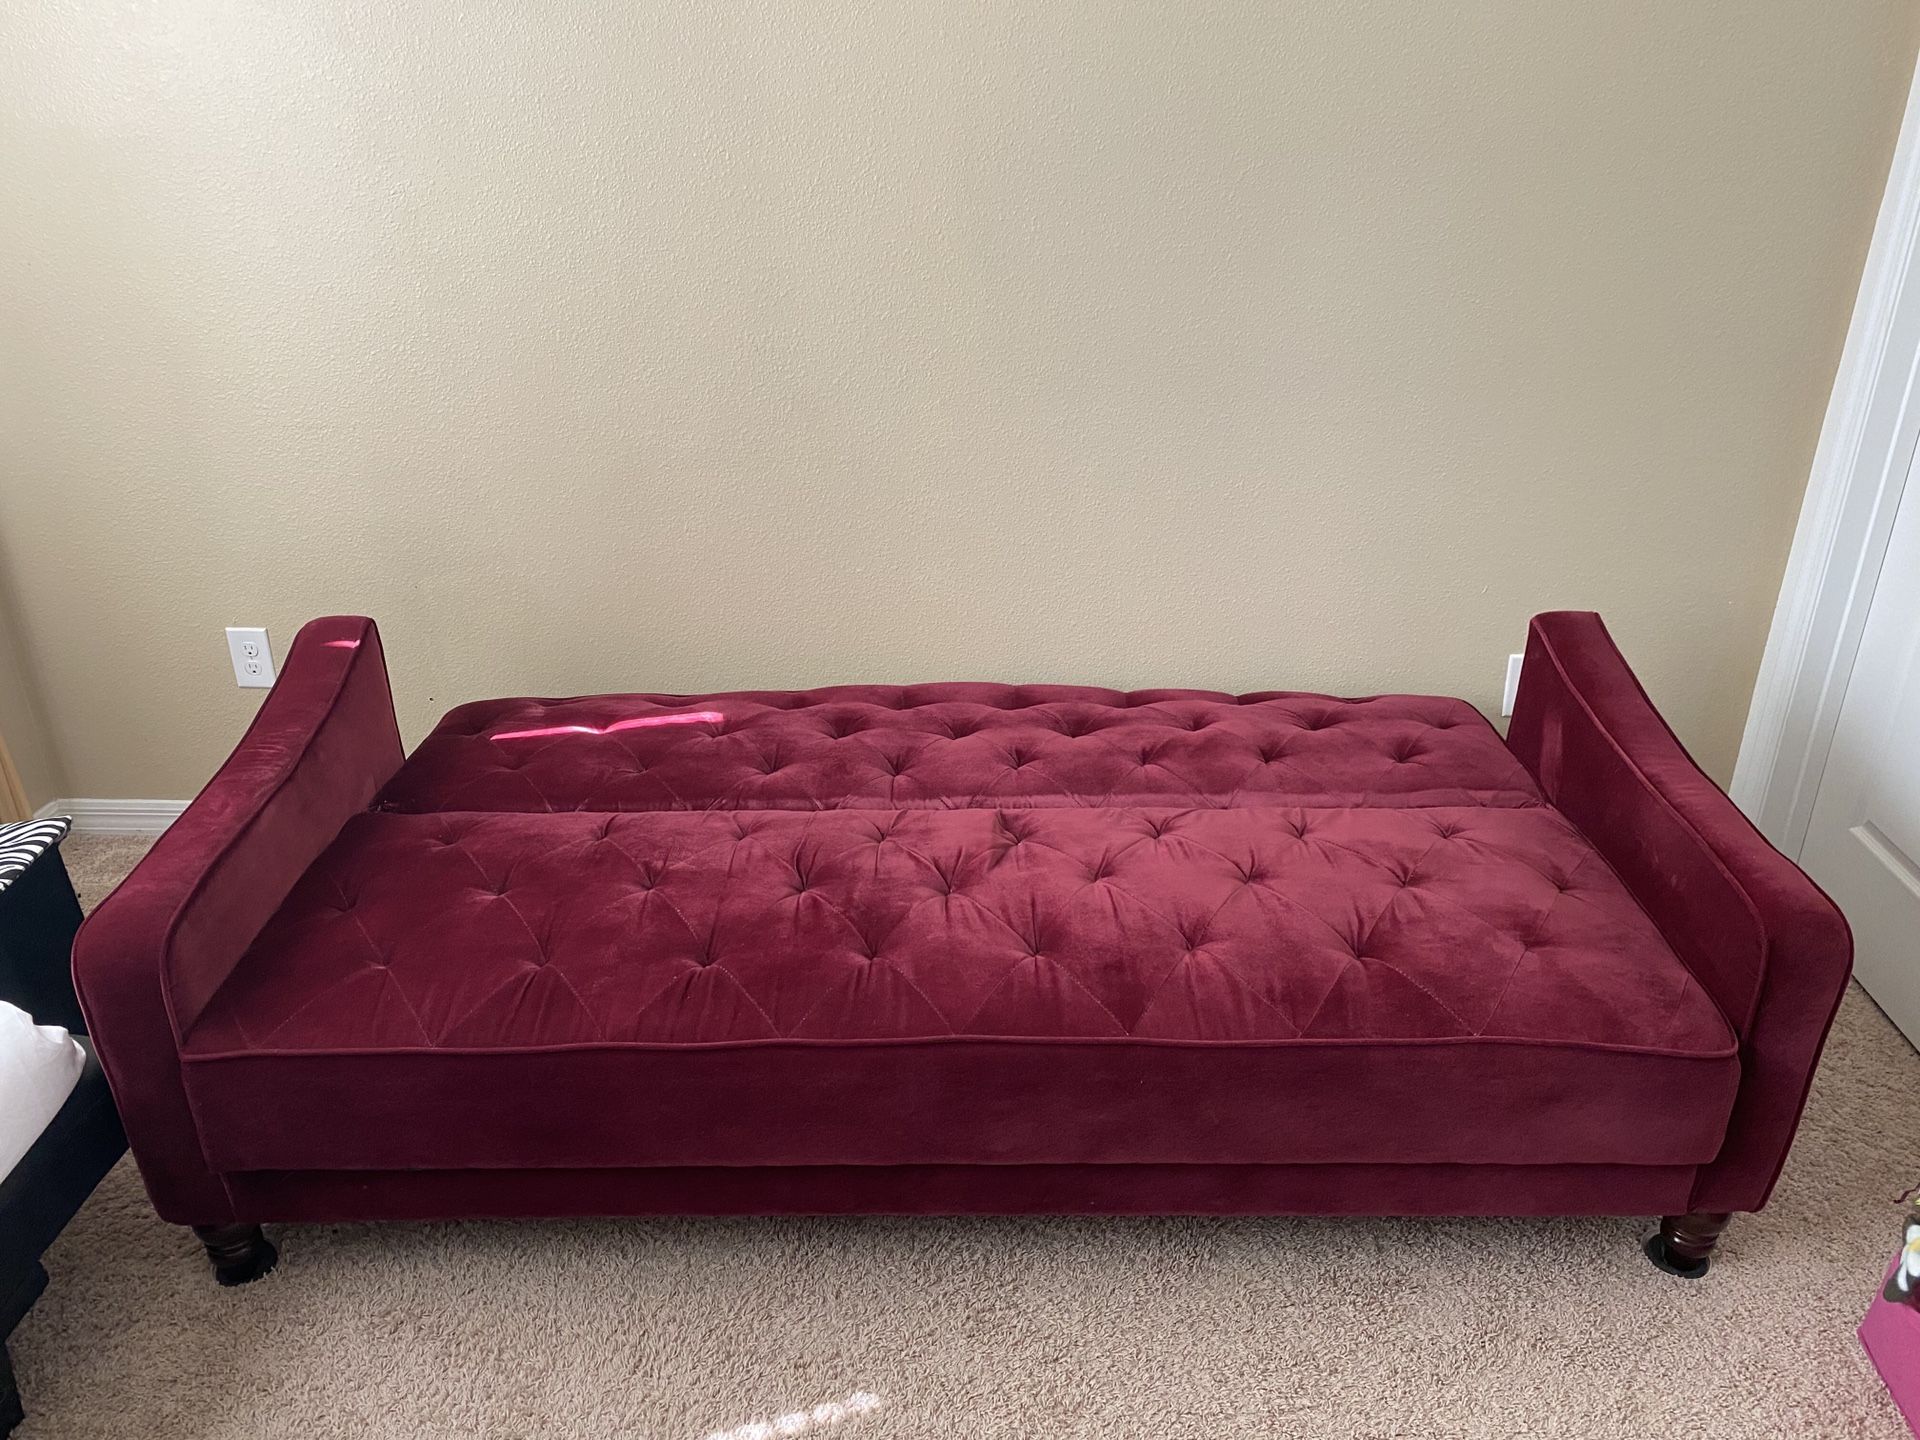 Loveseat futon 82”x 33” 200$